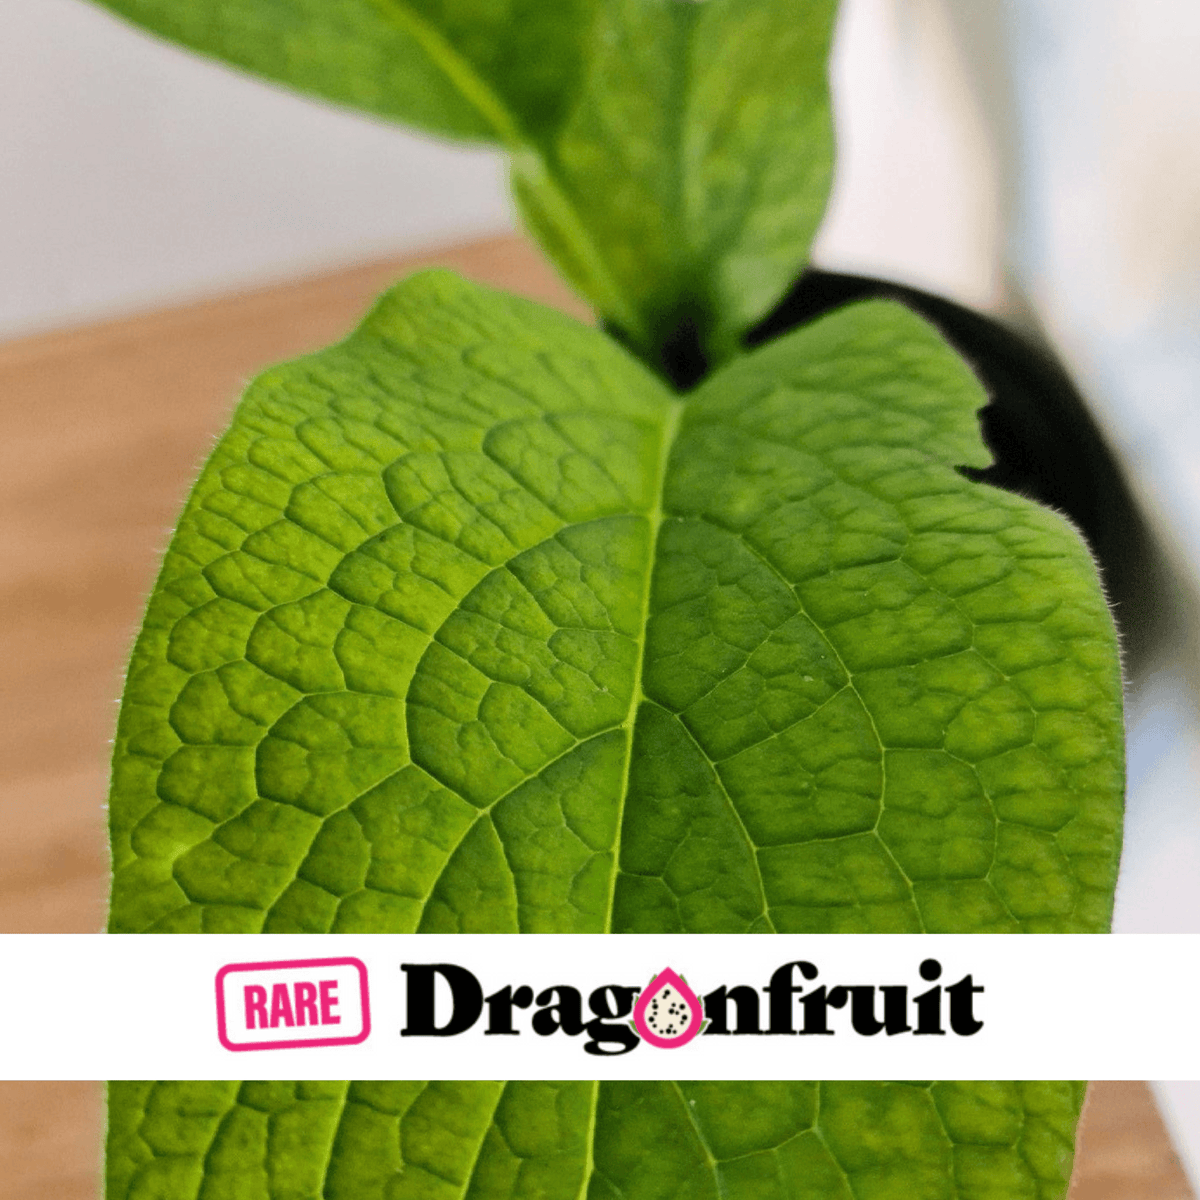 Comfrey Plant - Rare Dragon Fruit